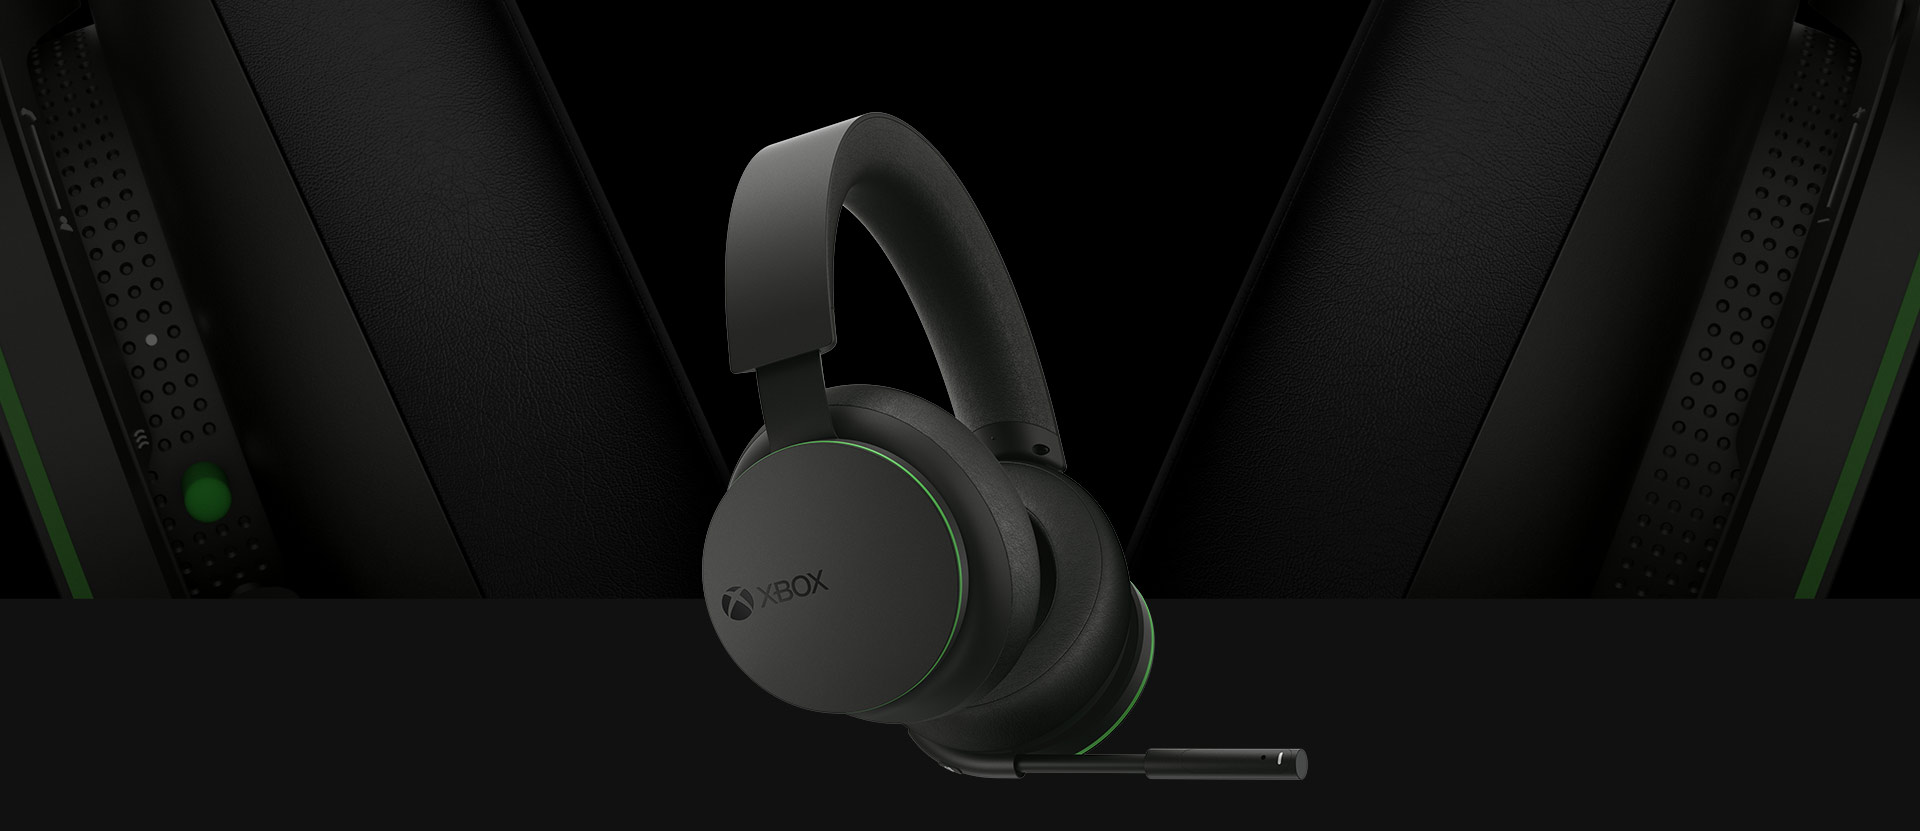 Xbox Kablosuz Mikrofonlu Kulaklığın önden açılı görünümü. Kulaklıkların büyük ve ayrıntılı görünümü, mikrofonlu kulaklığın arkasında gösterilmektedir.